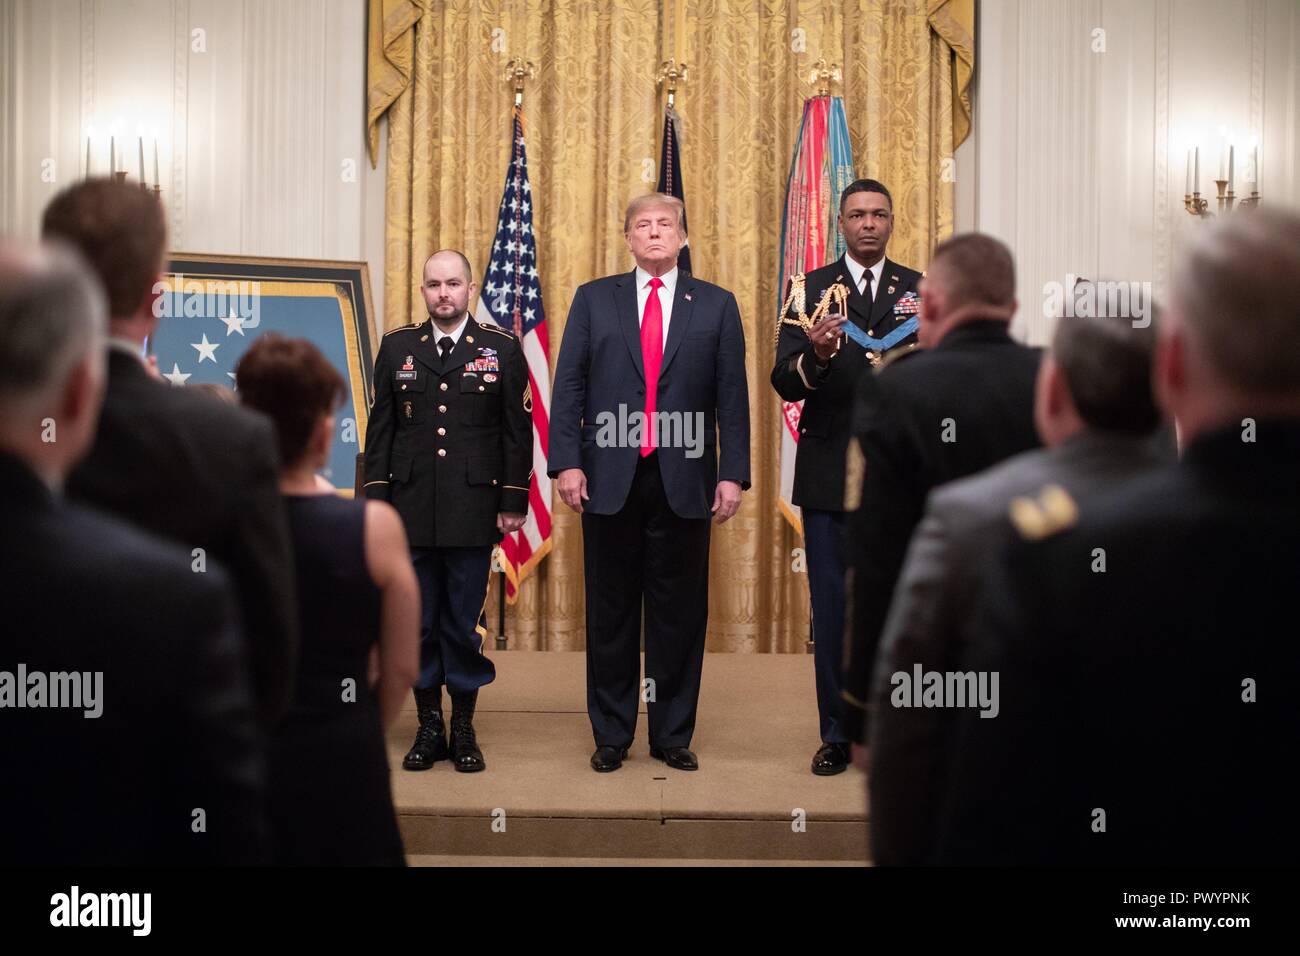 Presidente estadounidense Donald Trump presenta la Medalla de Honor al Sargento del Ejército estadounidense retirado. Ronald J. Shurer II durante una ceremonia en el Salón Este de la Casa Blanca, el 1 de octubre de 2018 en Washington, DC. Sharer recibió la medalla de heroísmo durante la batalla del shok Valle en Afganistán. Foto de stock